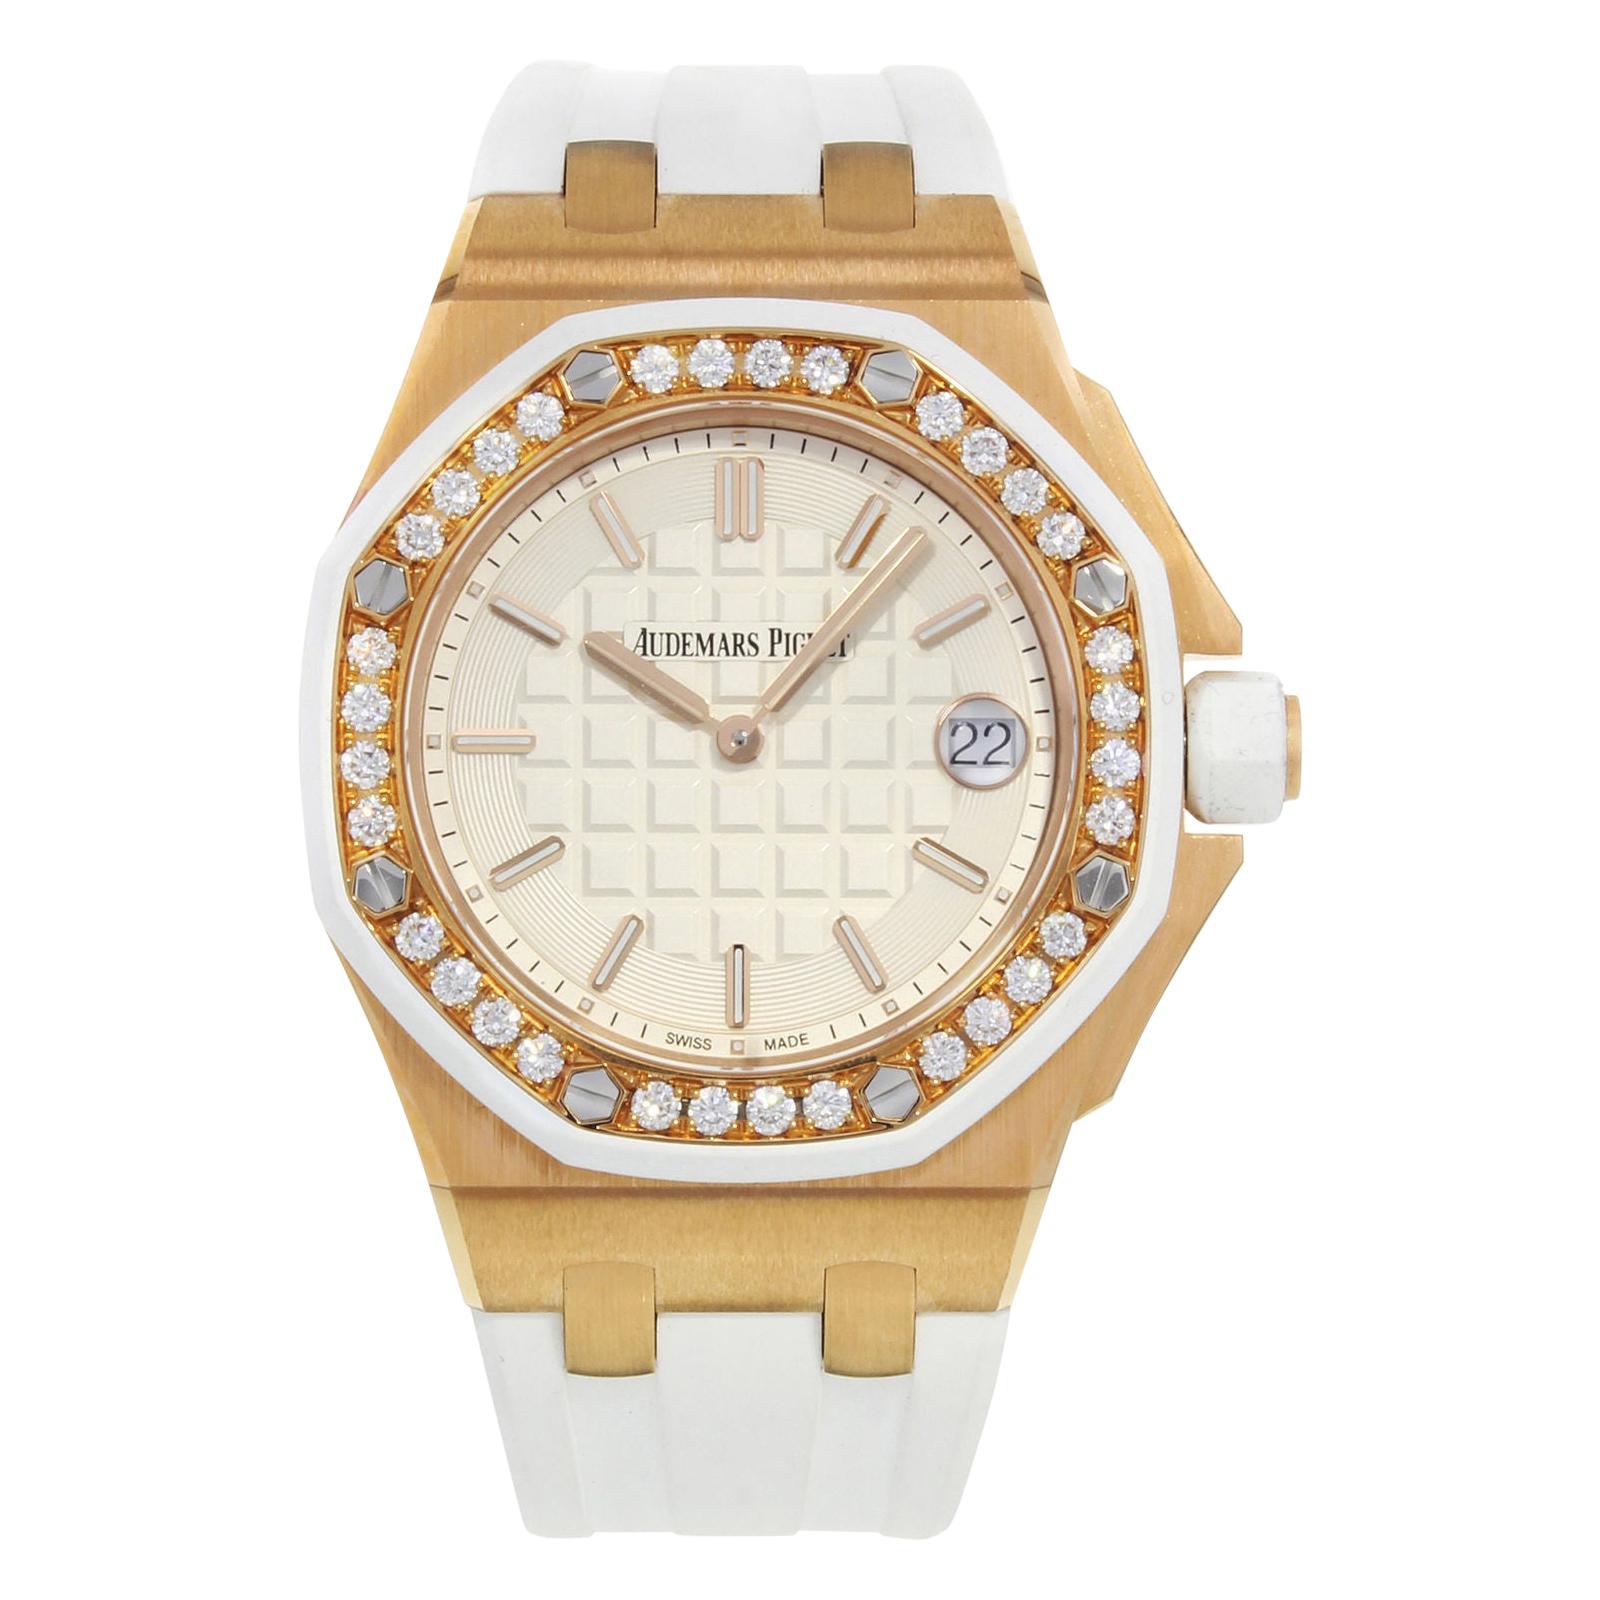 Audemars Piguet Royal Oak Offshore 67540Ok.ZZ.A010CA.01 18 Karat Rose Gold Watch